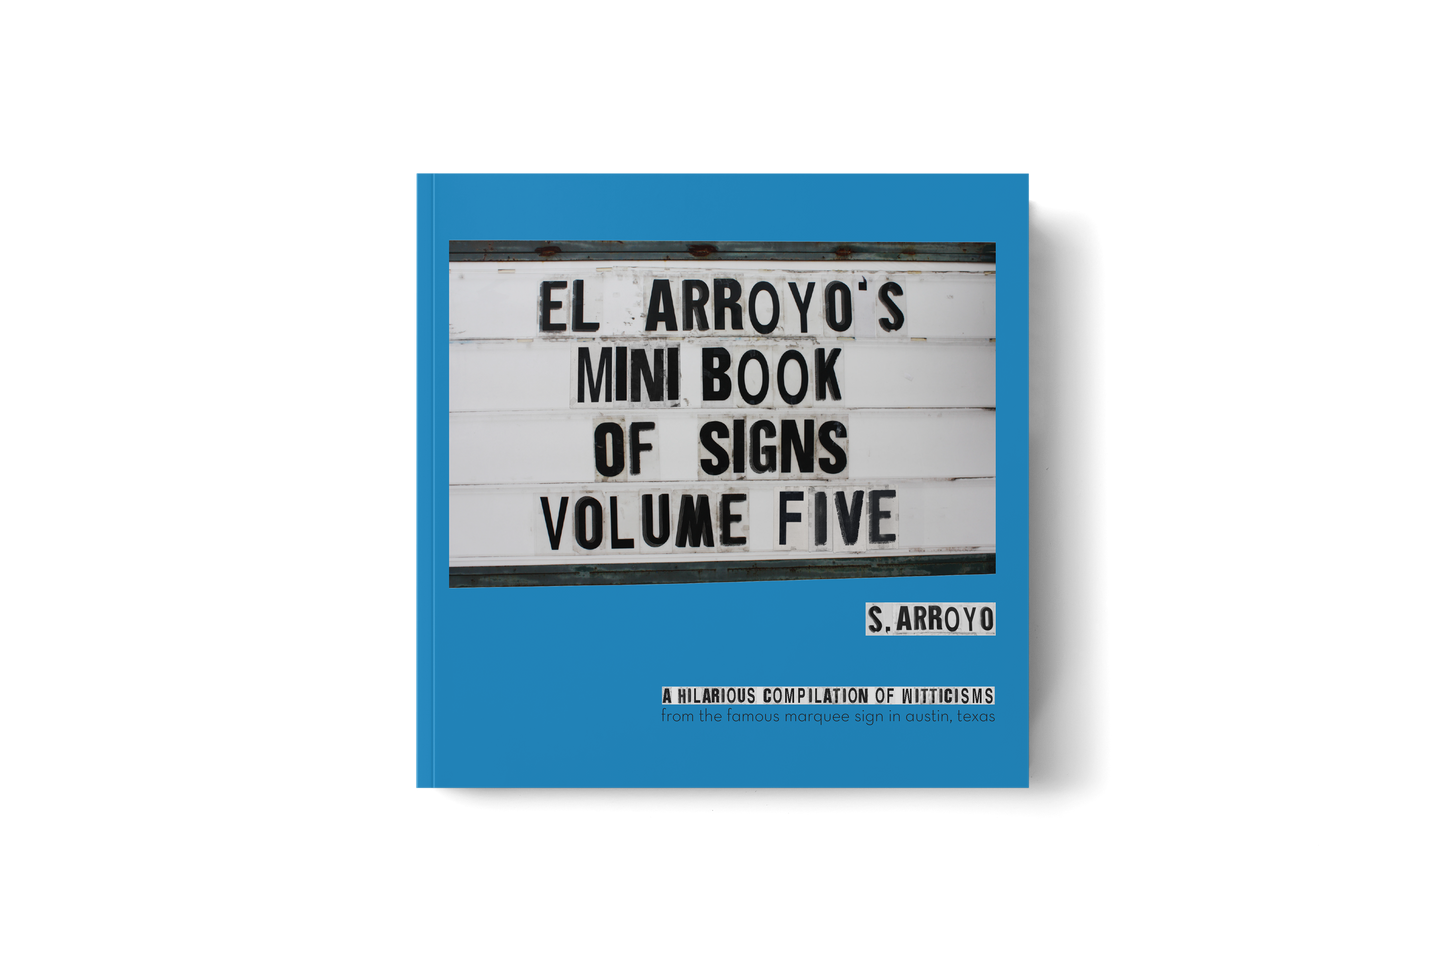 El Arroyo - El Arroyo's Mini Book of Signs Volume Five